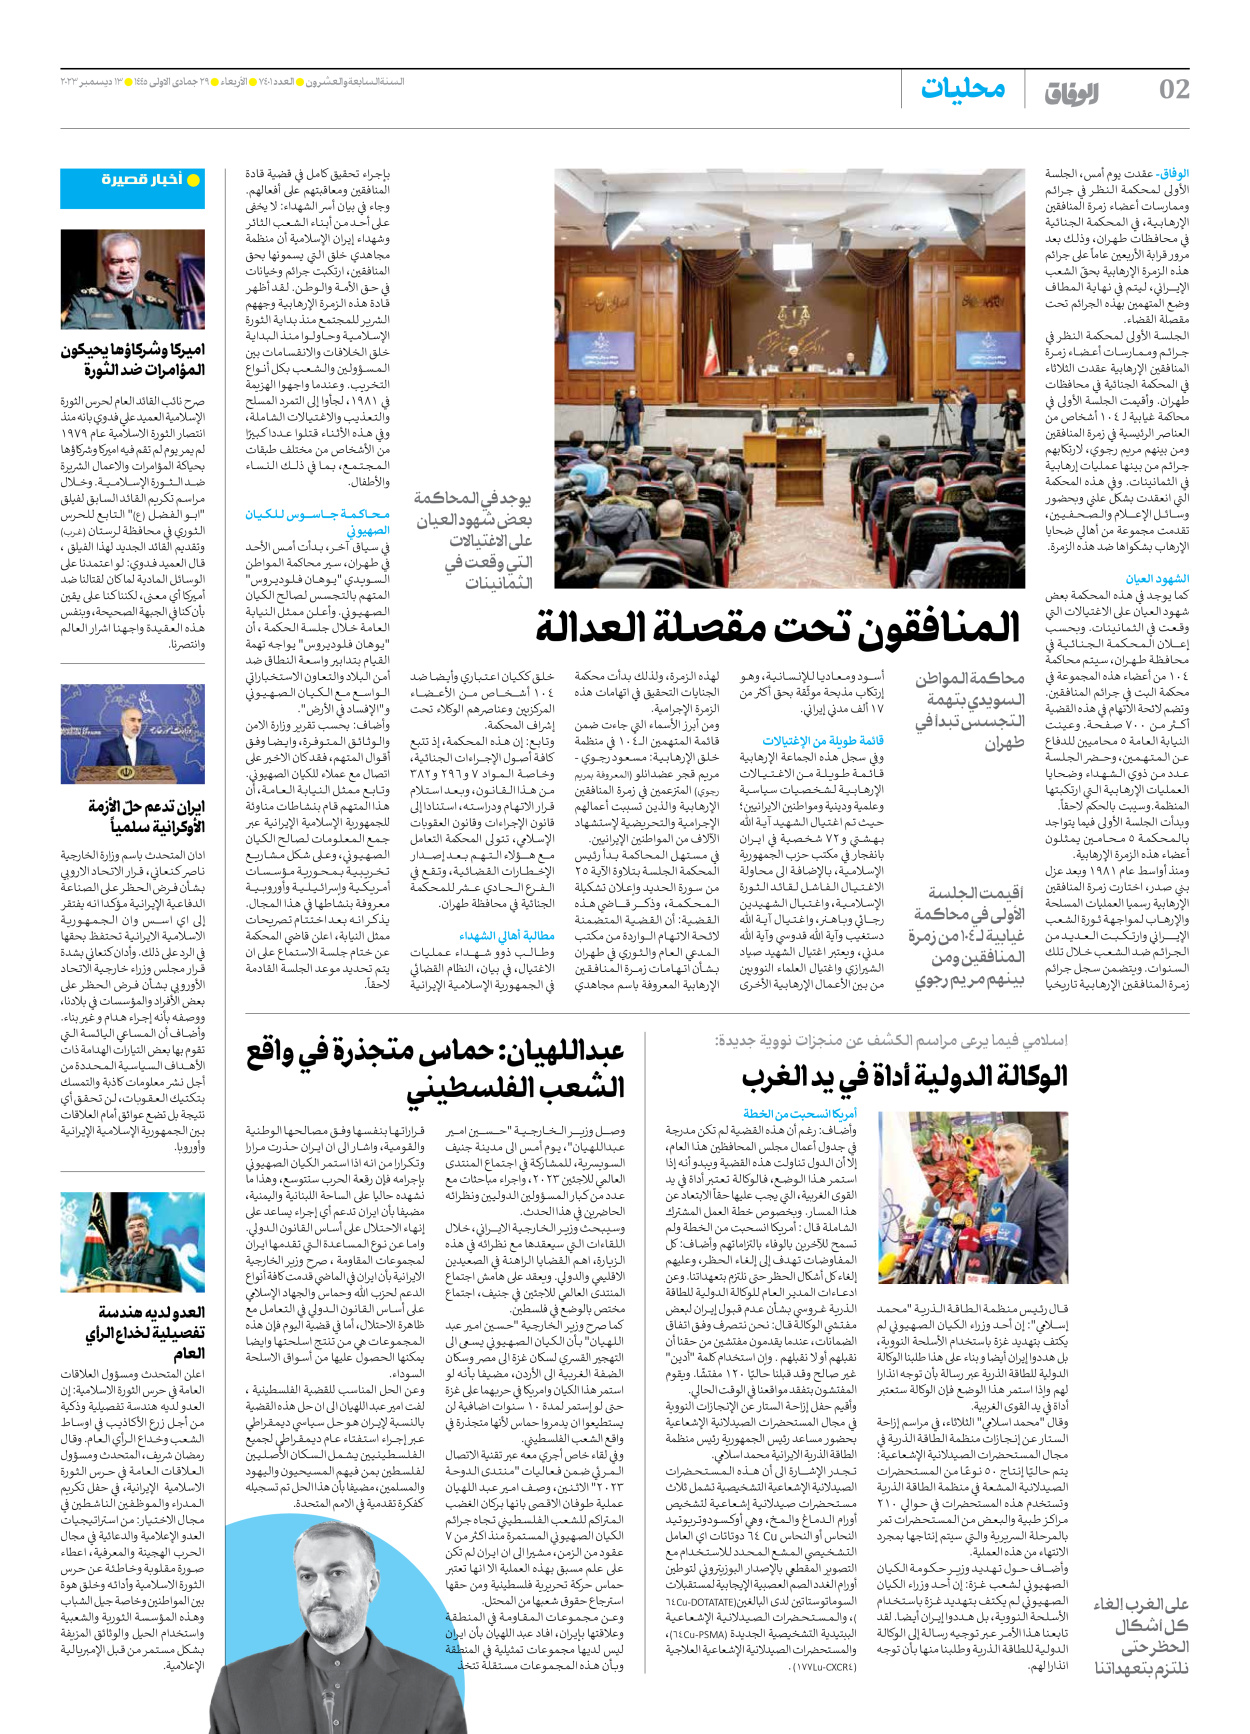 صحیفة ایران الدولیة الوفاق - العدد سبعة آلاف وأربعمائة وواحد - ١٣ ديسمبر ٢٠٢٣ - الصفحة ۲